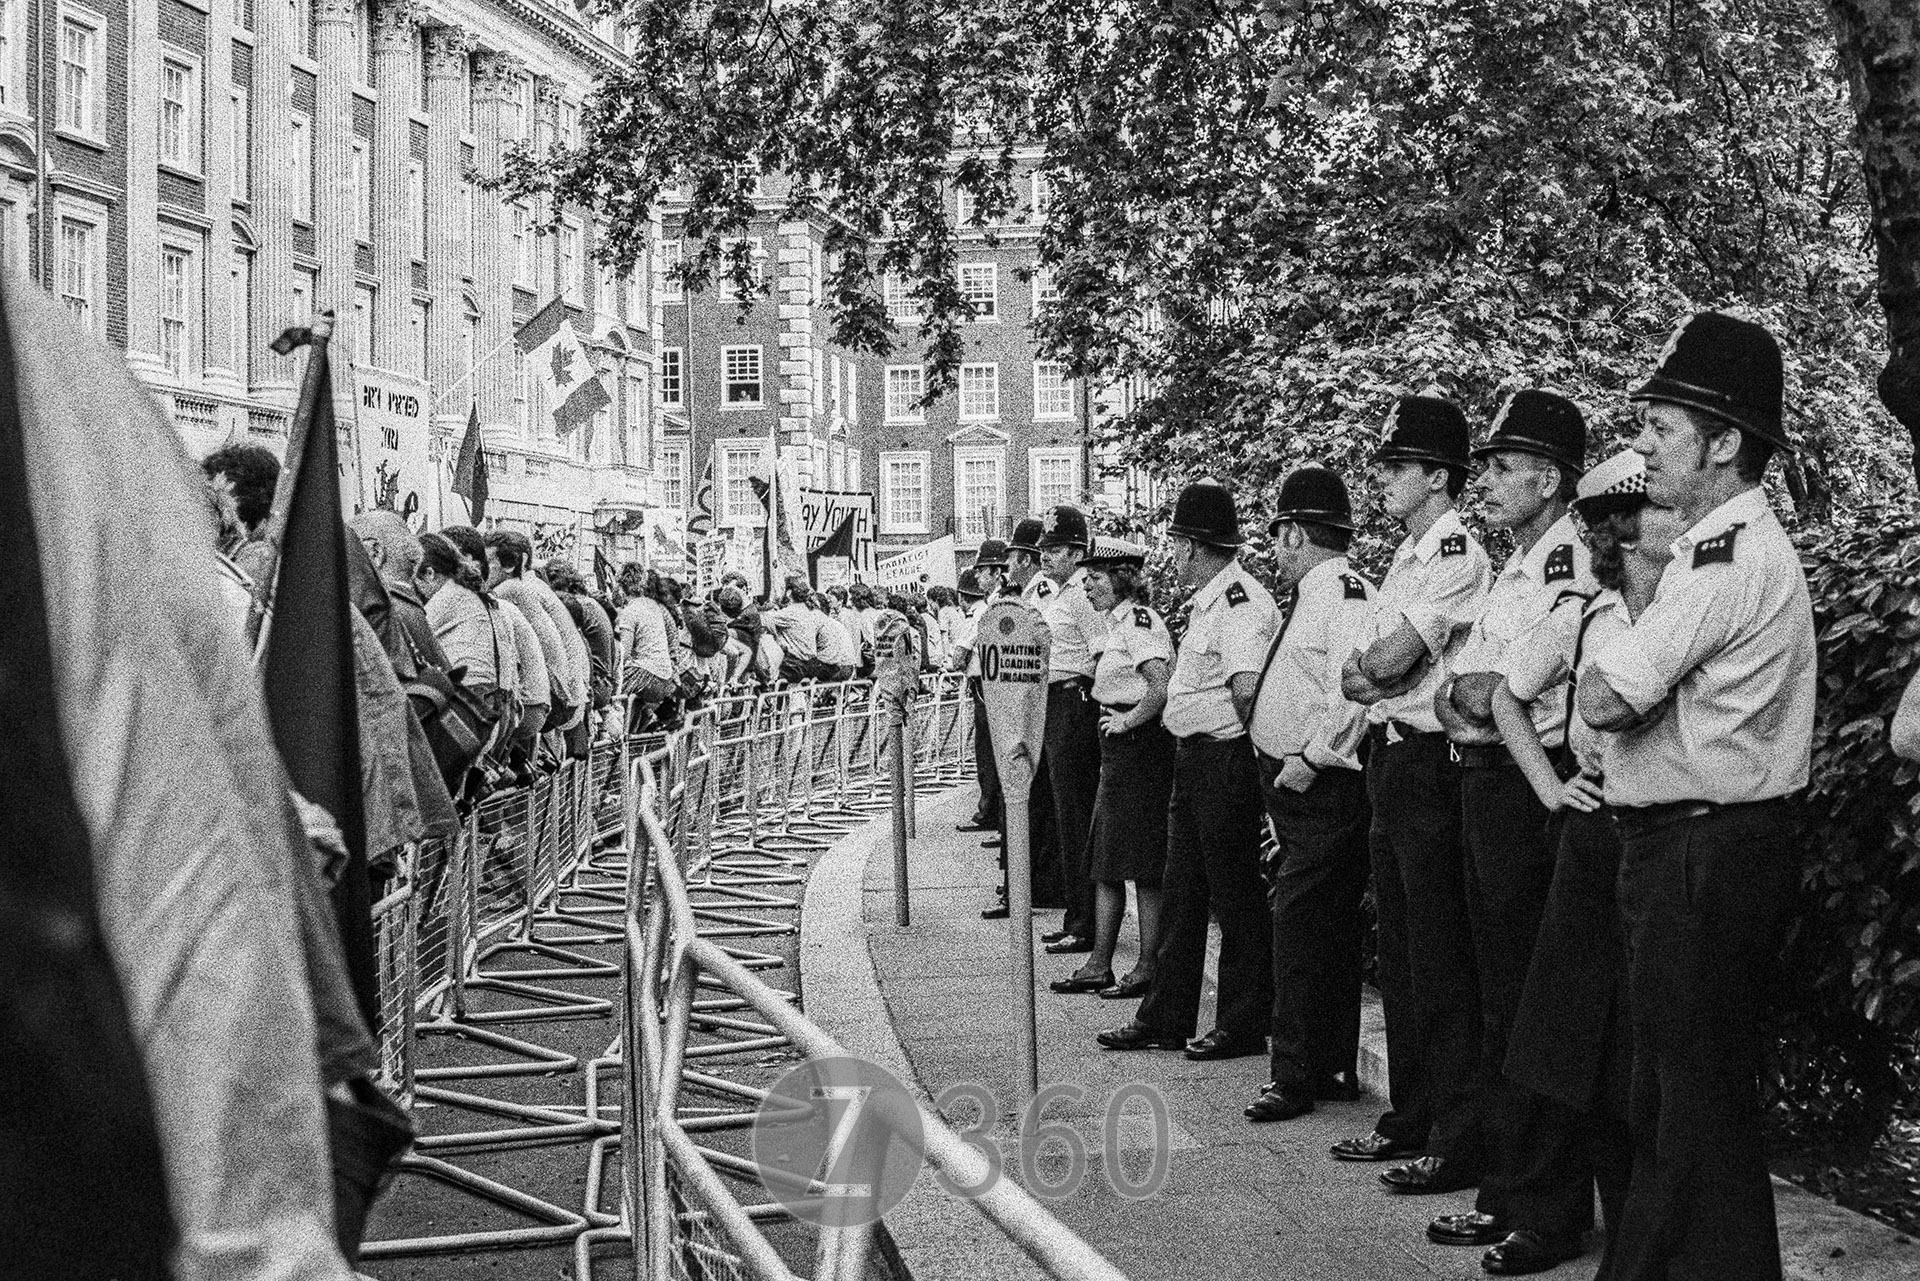 CND Anti Reagan Demo, Grosvenor Square, June 1984